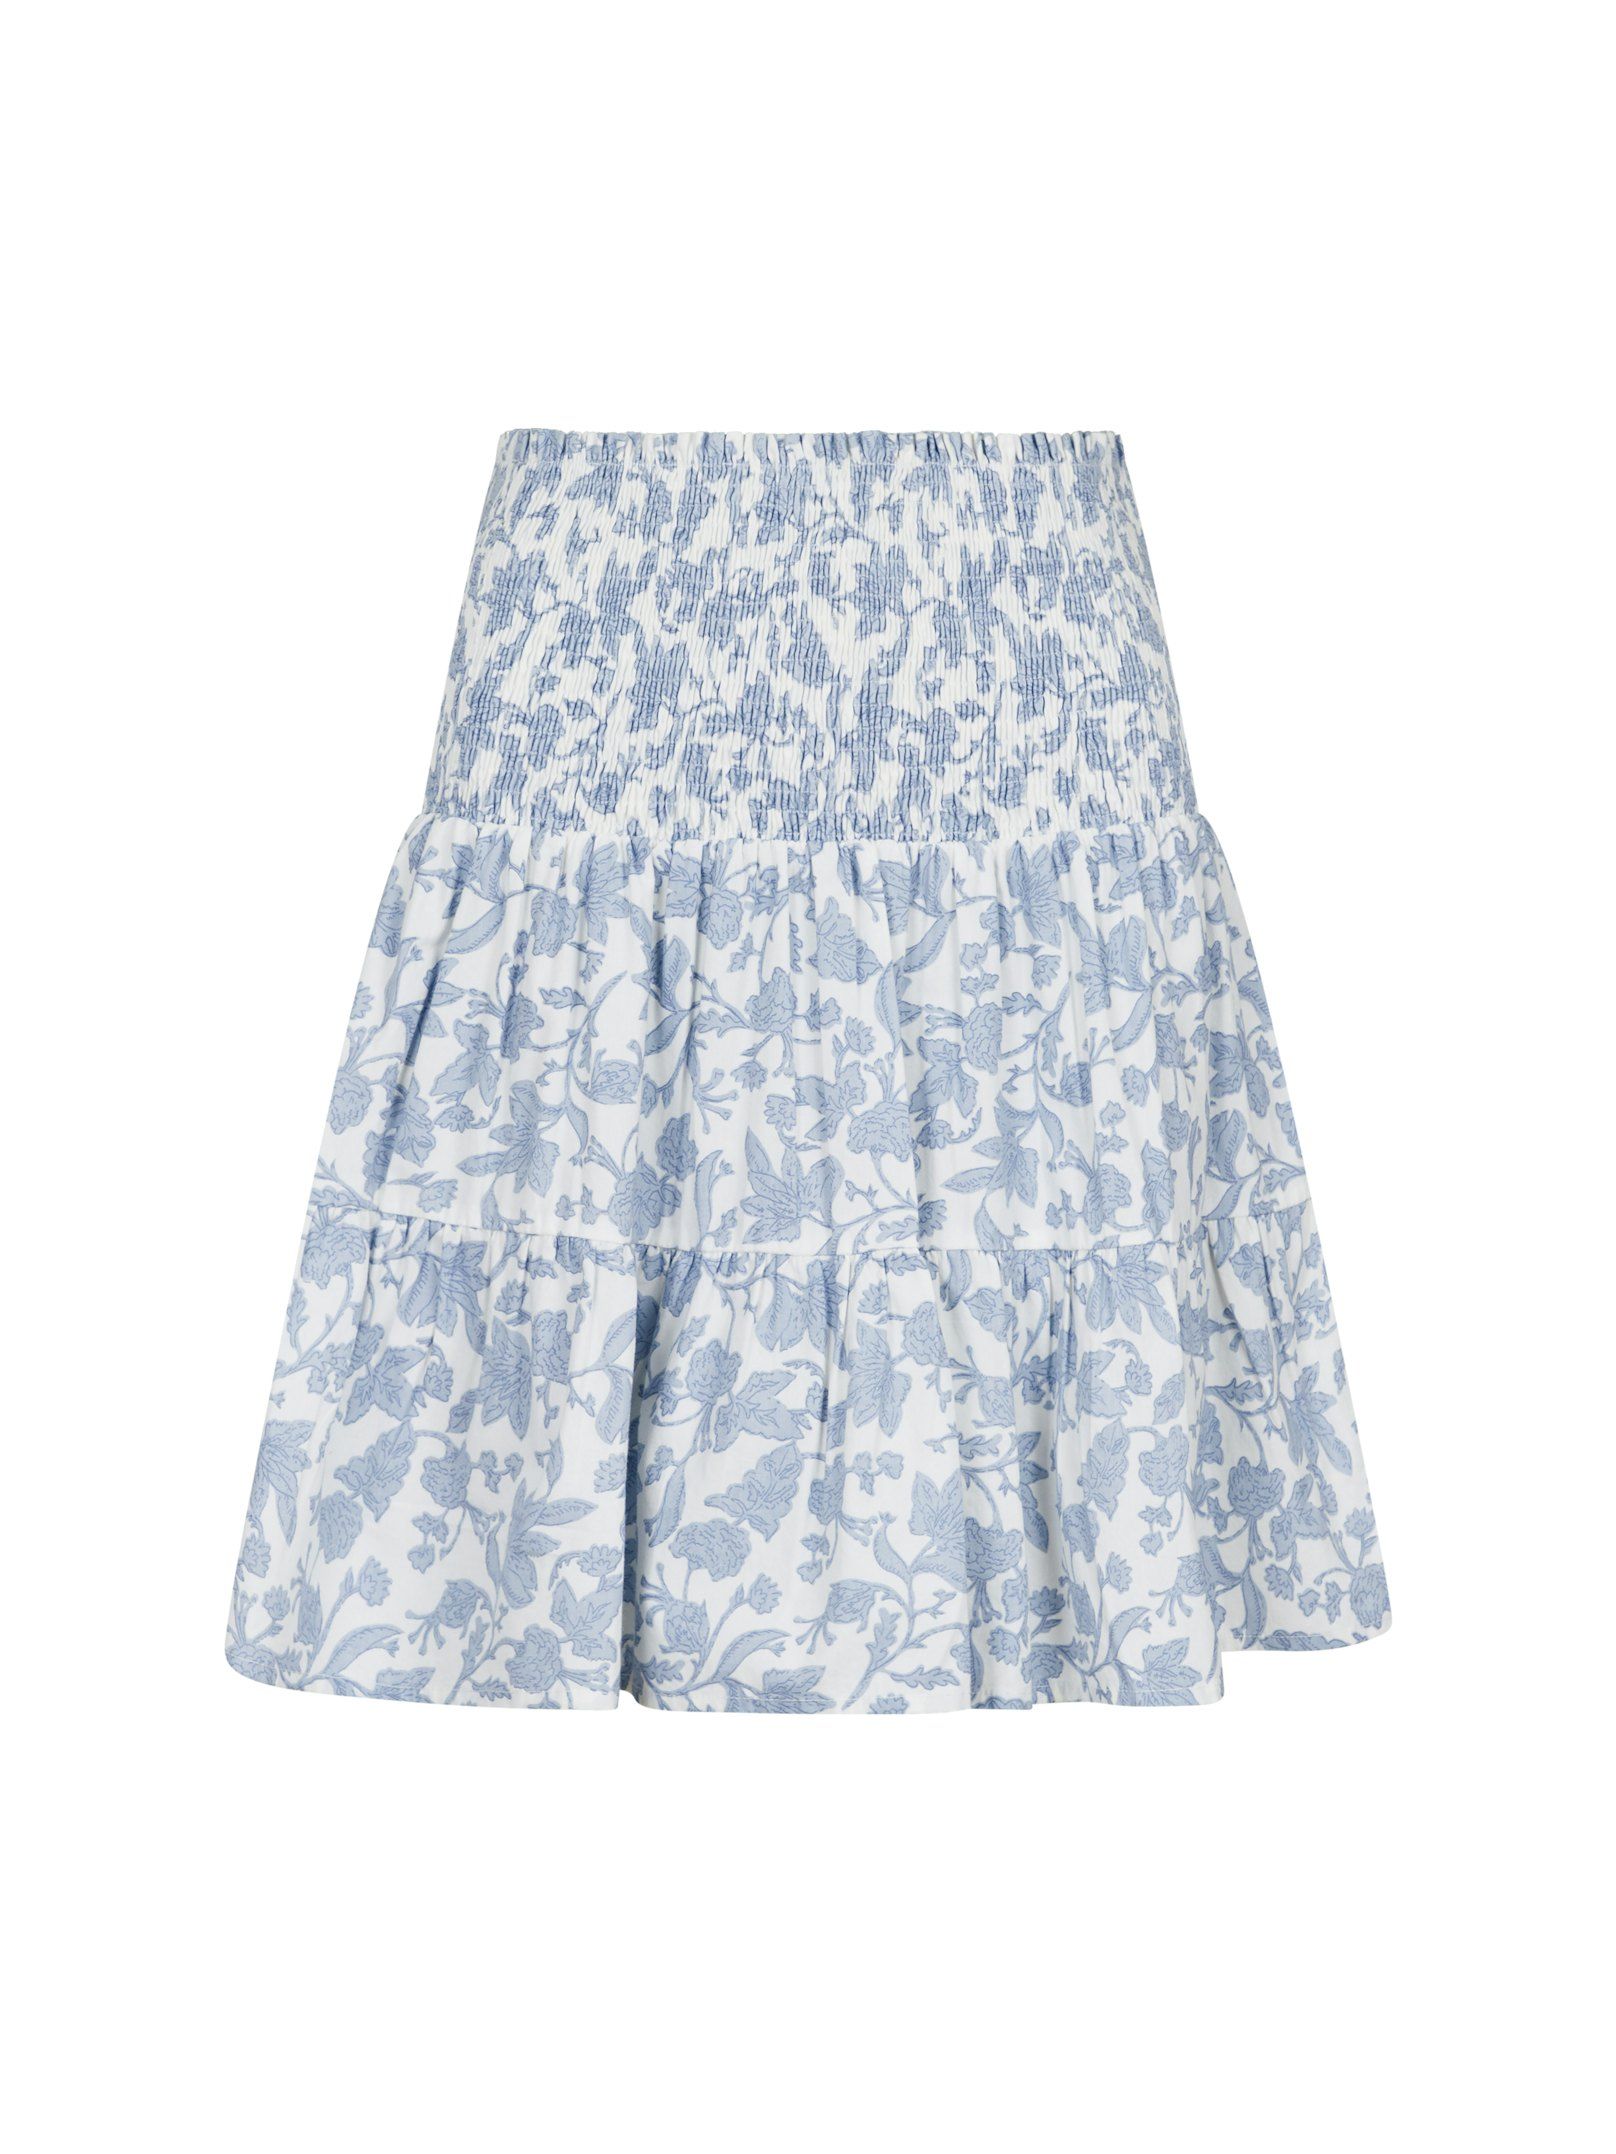 Cordova Garden Elegance Skirt Light Blue